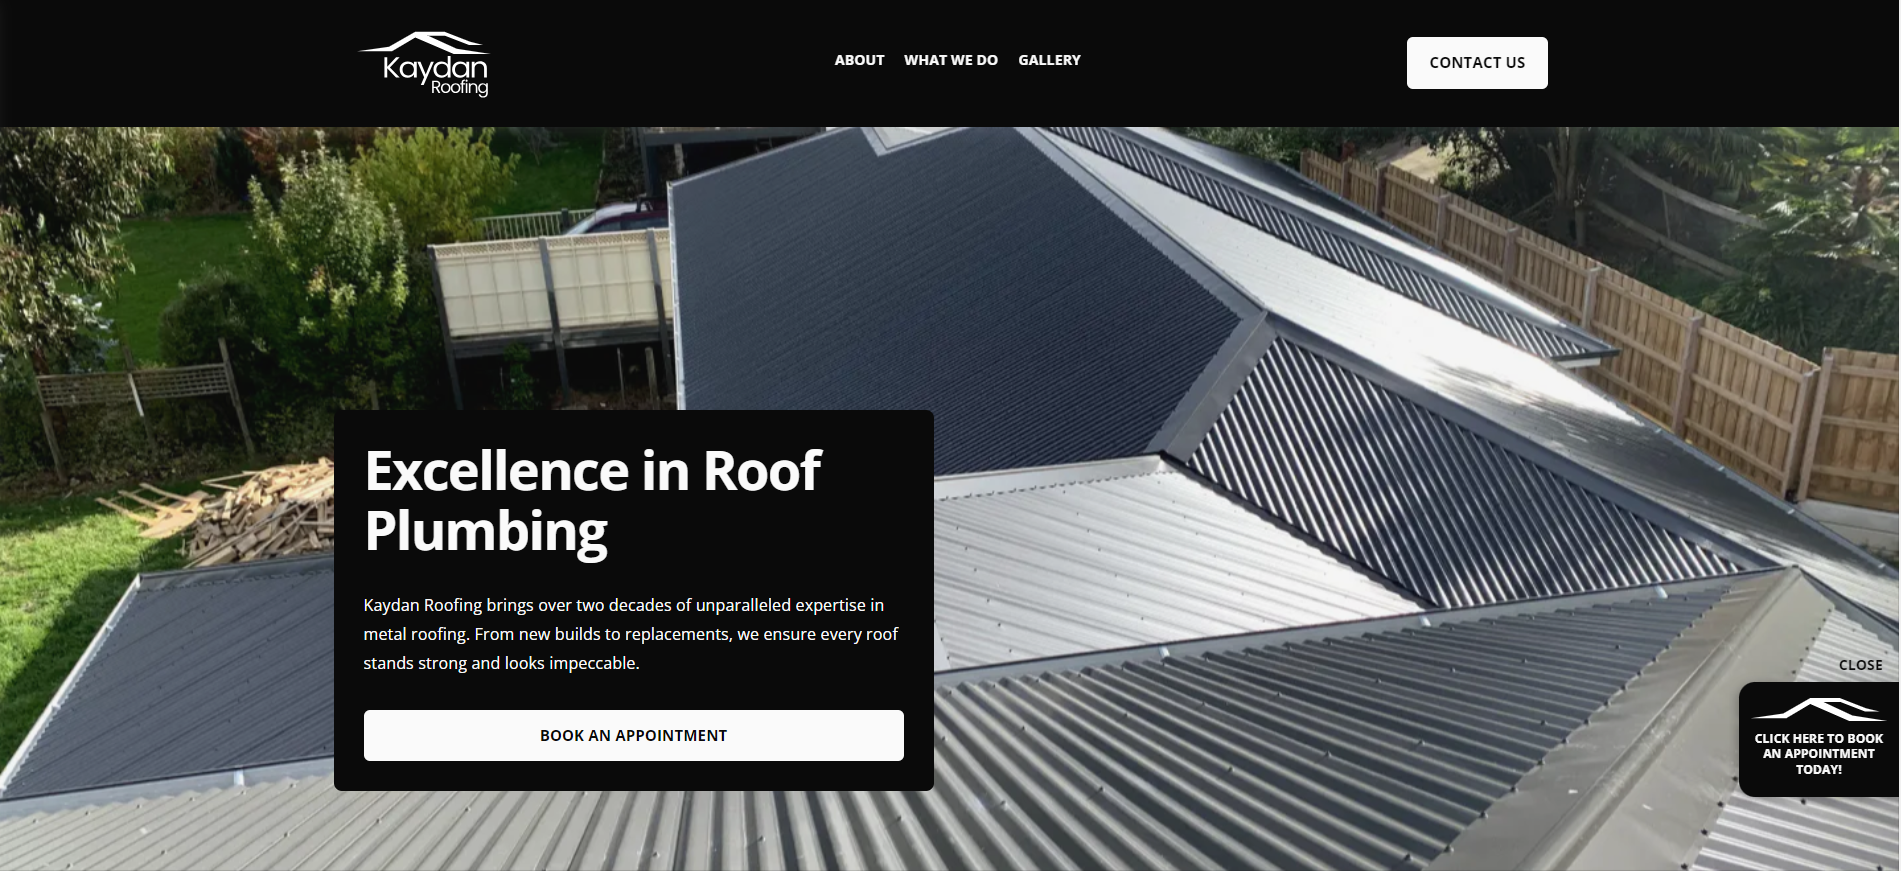 Kaydan roofing website homepage